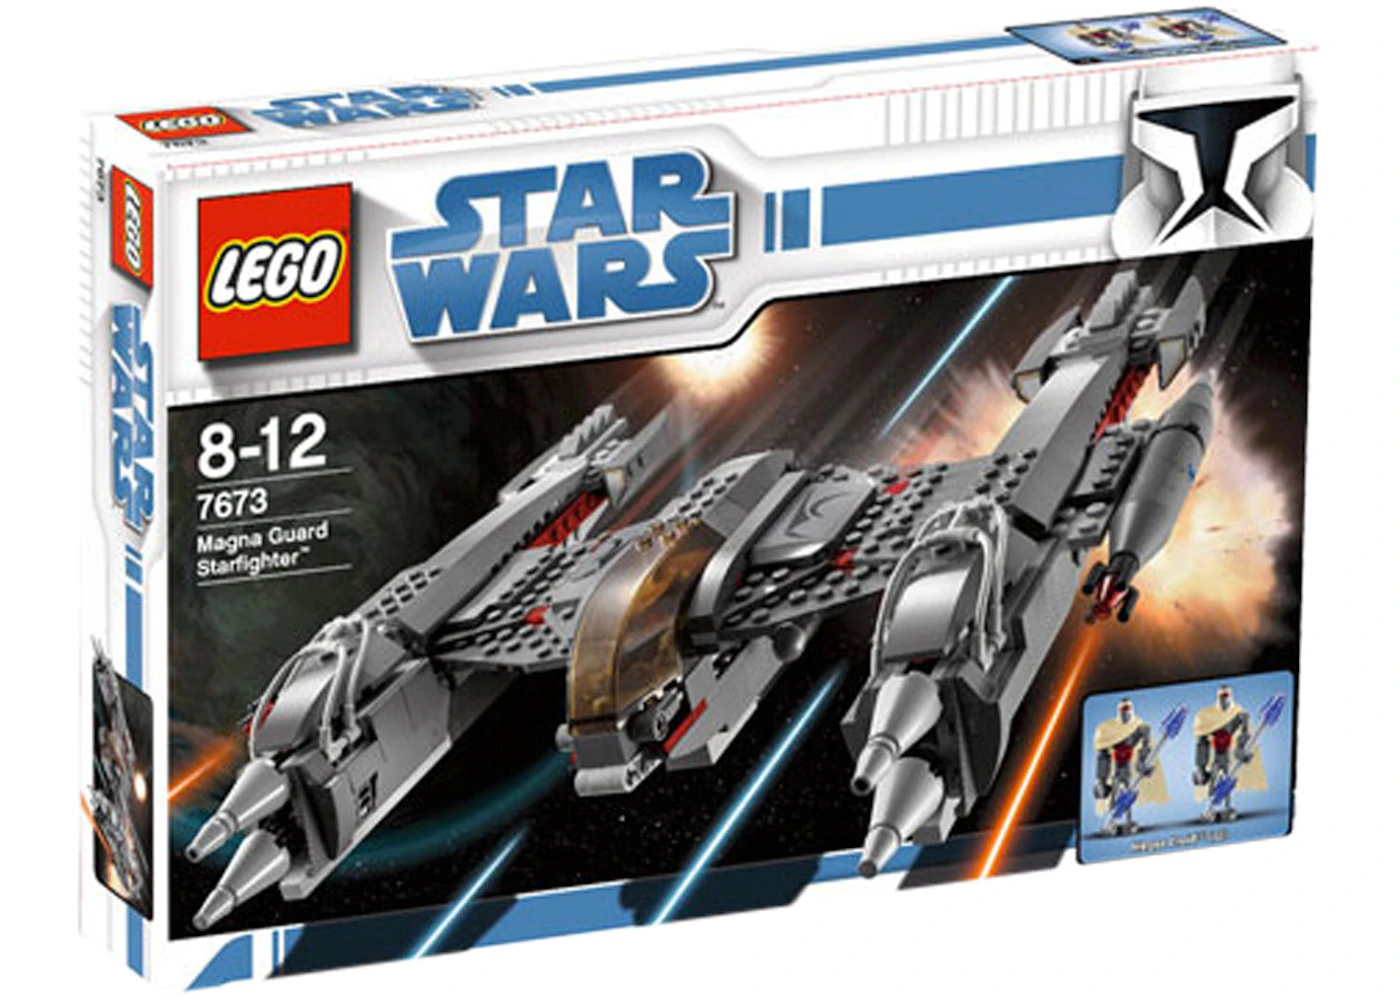 Tilføj til Arab labyrint LEGO Star Wars Magna Guard Starfighter Set 7673 - US